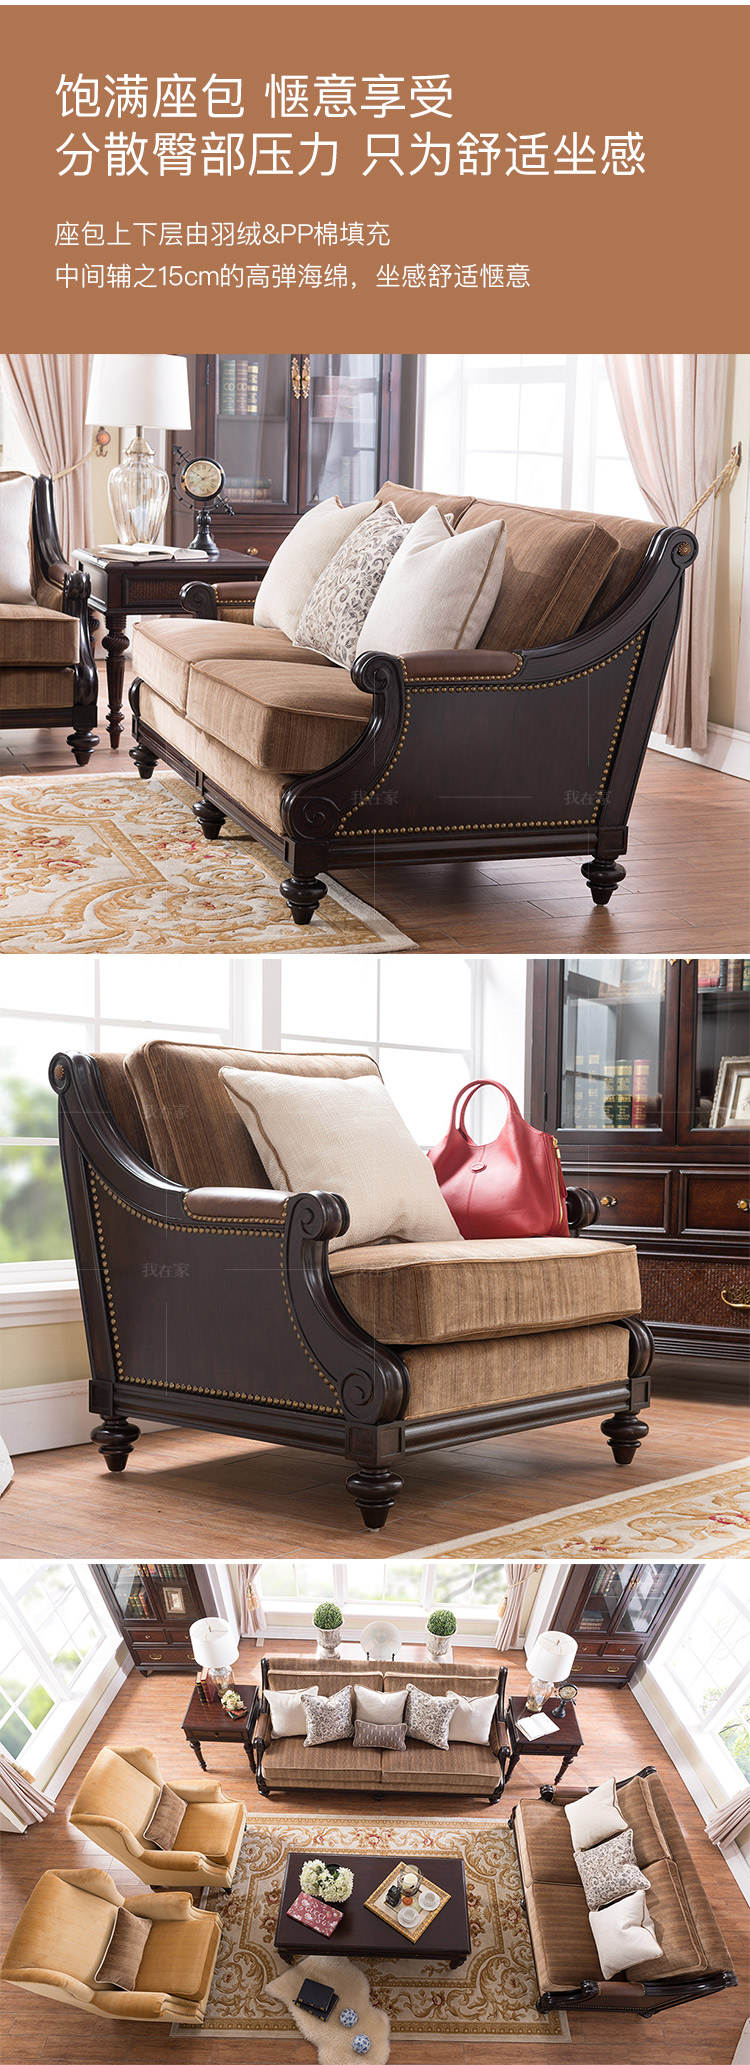 传统美式风格摩洛凯沙发的家具详细介绍